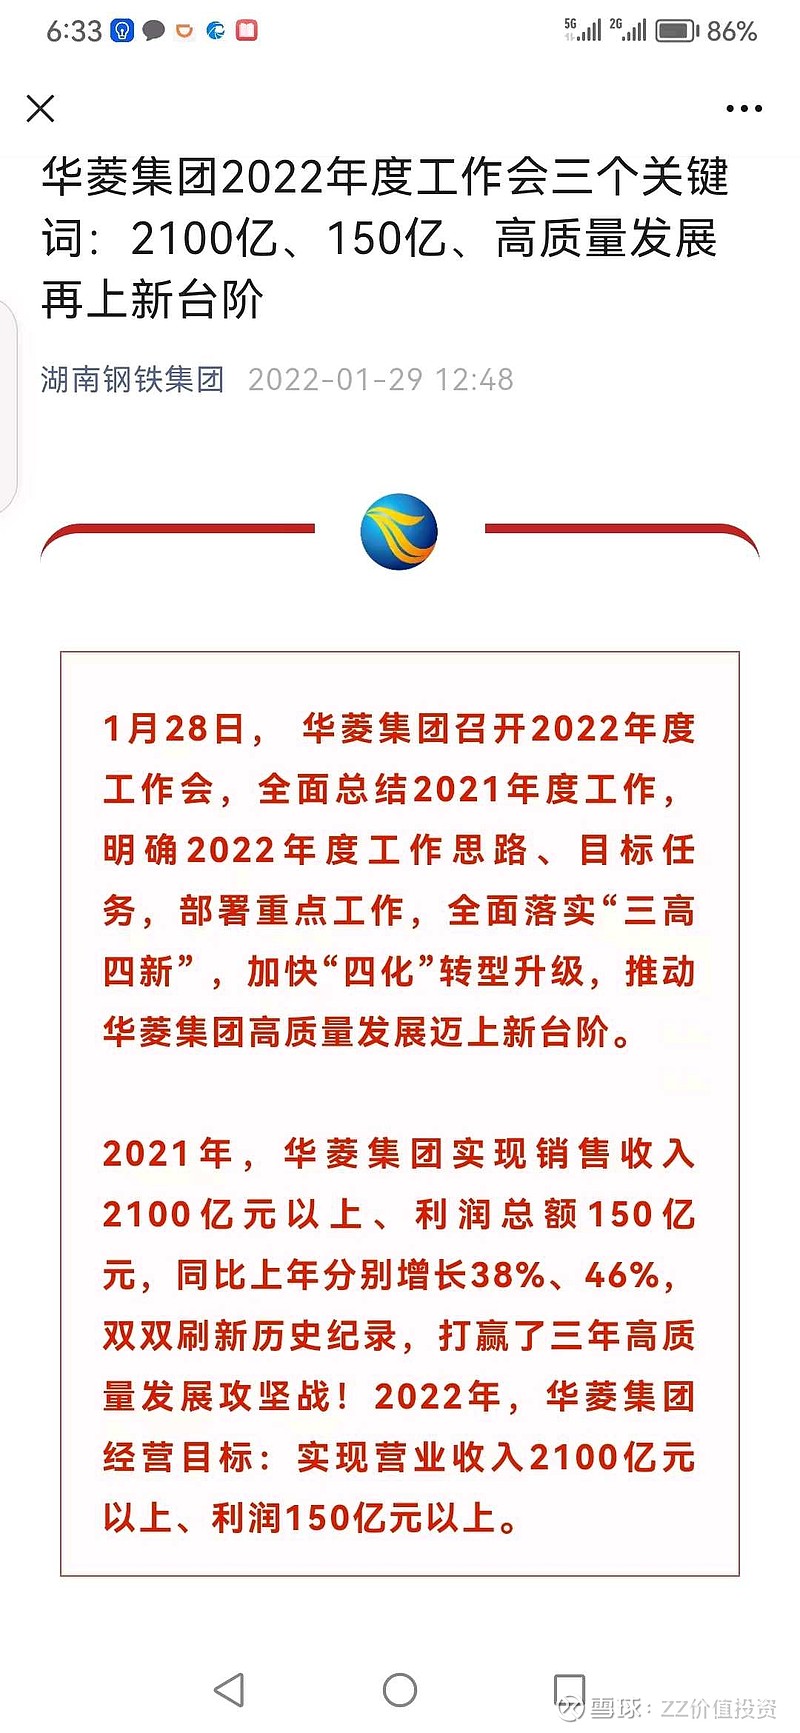 湖南省钢铁集团公司利润总额15